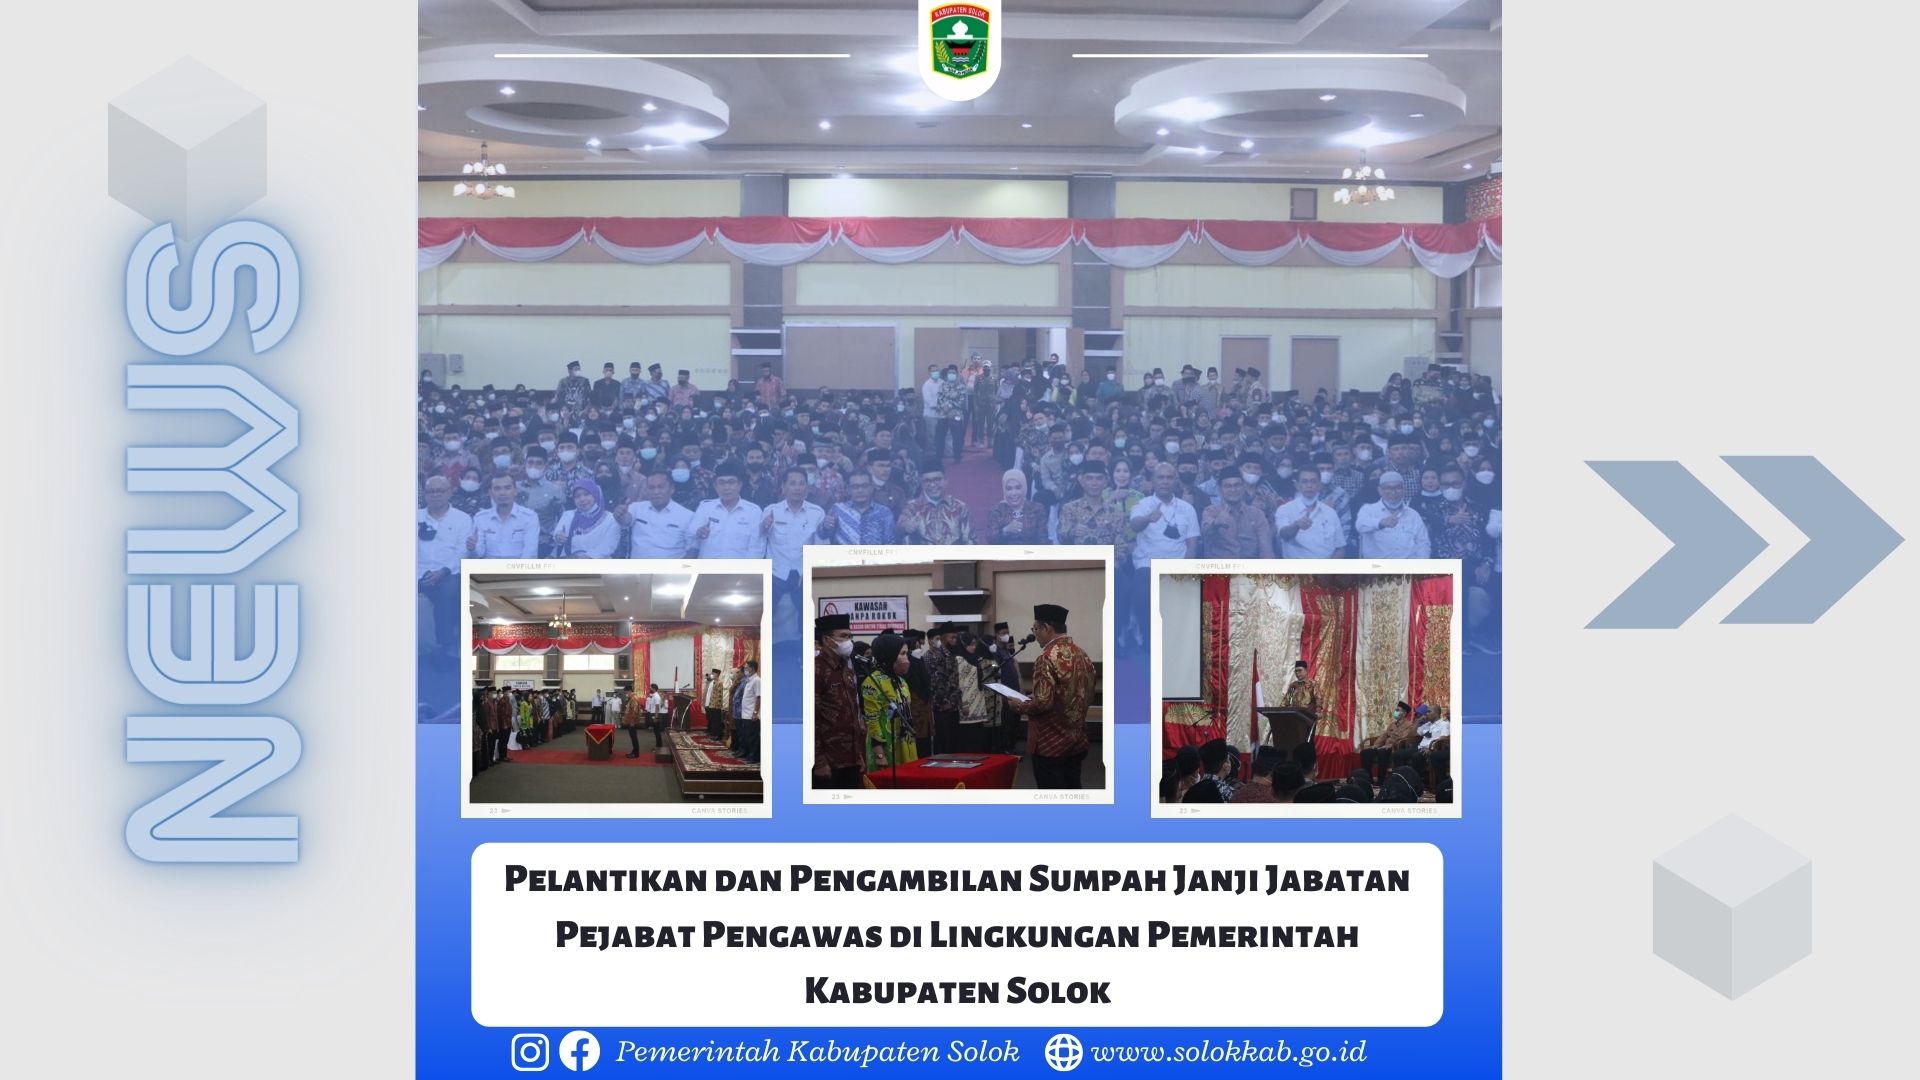 Pelantikan dan Pengambilan Sumpah Janji Jabatan Pejabat Pengawas di Lingkungan Pemerintah Kabupaten Solok